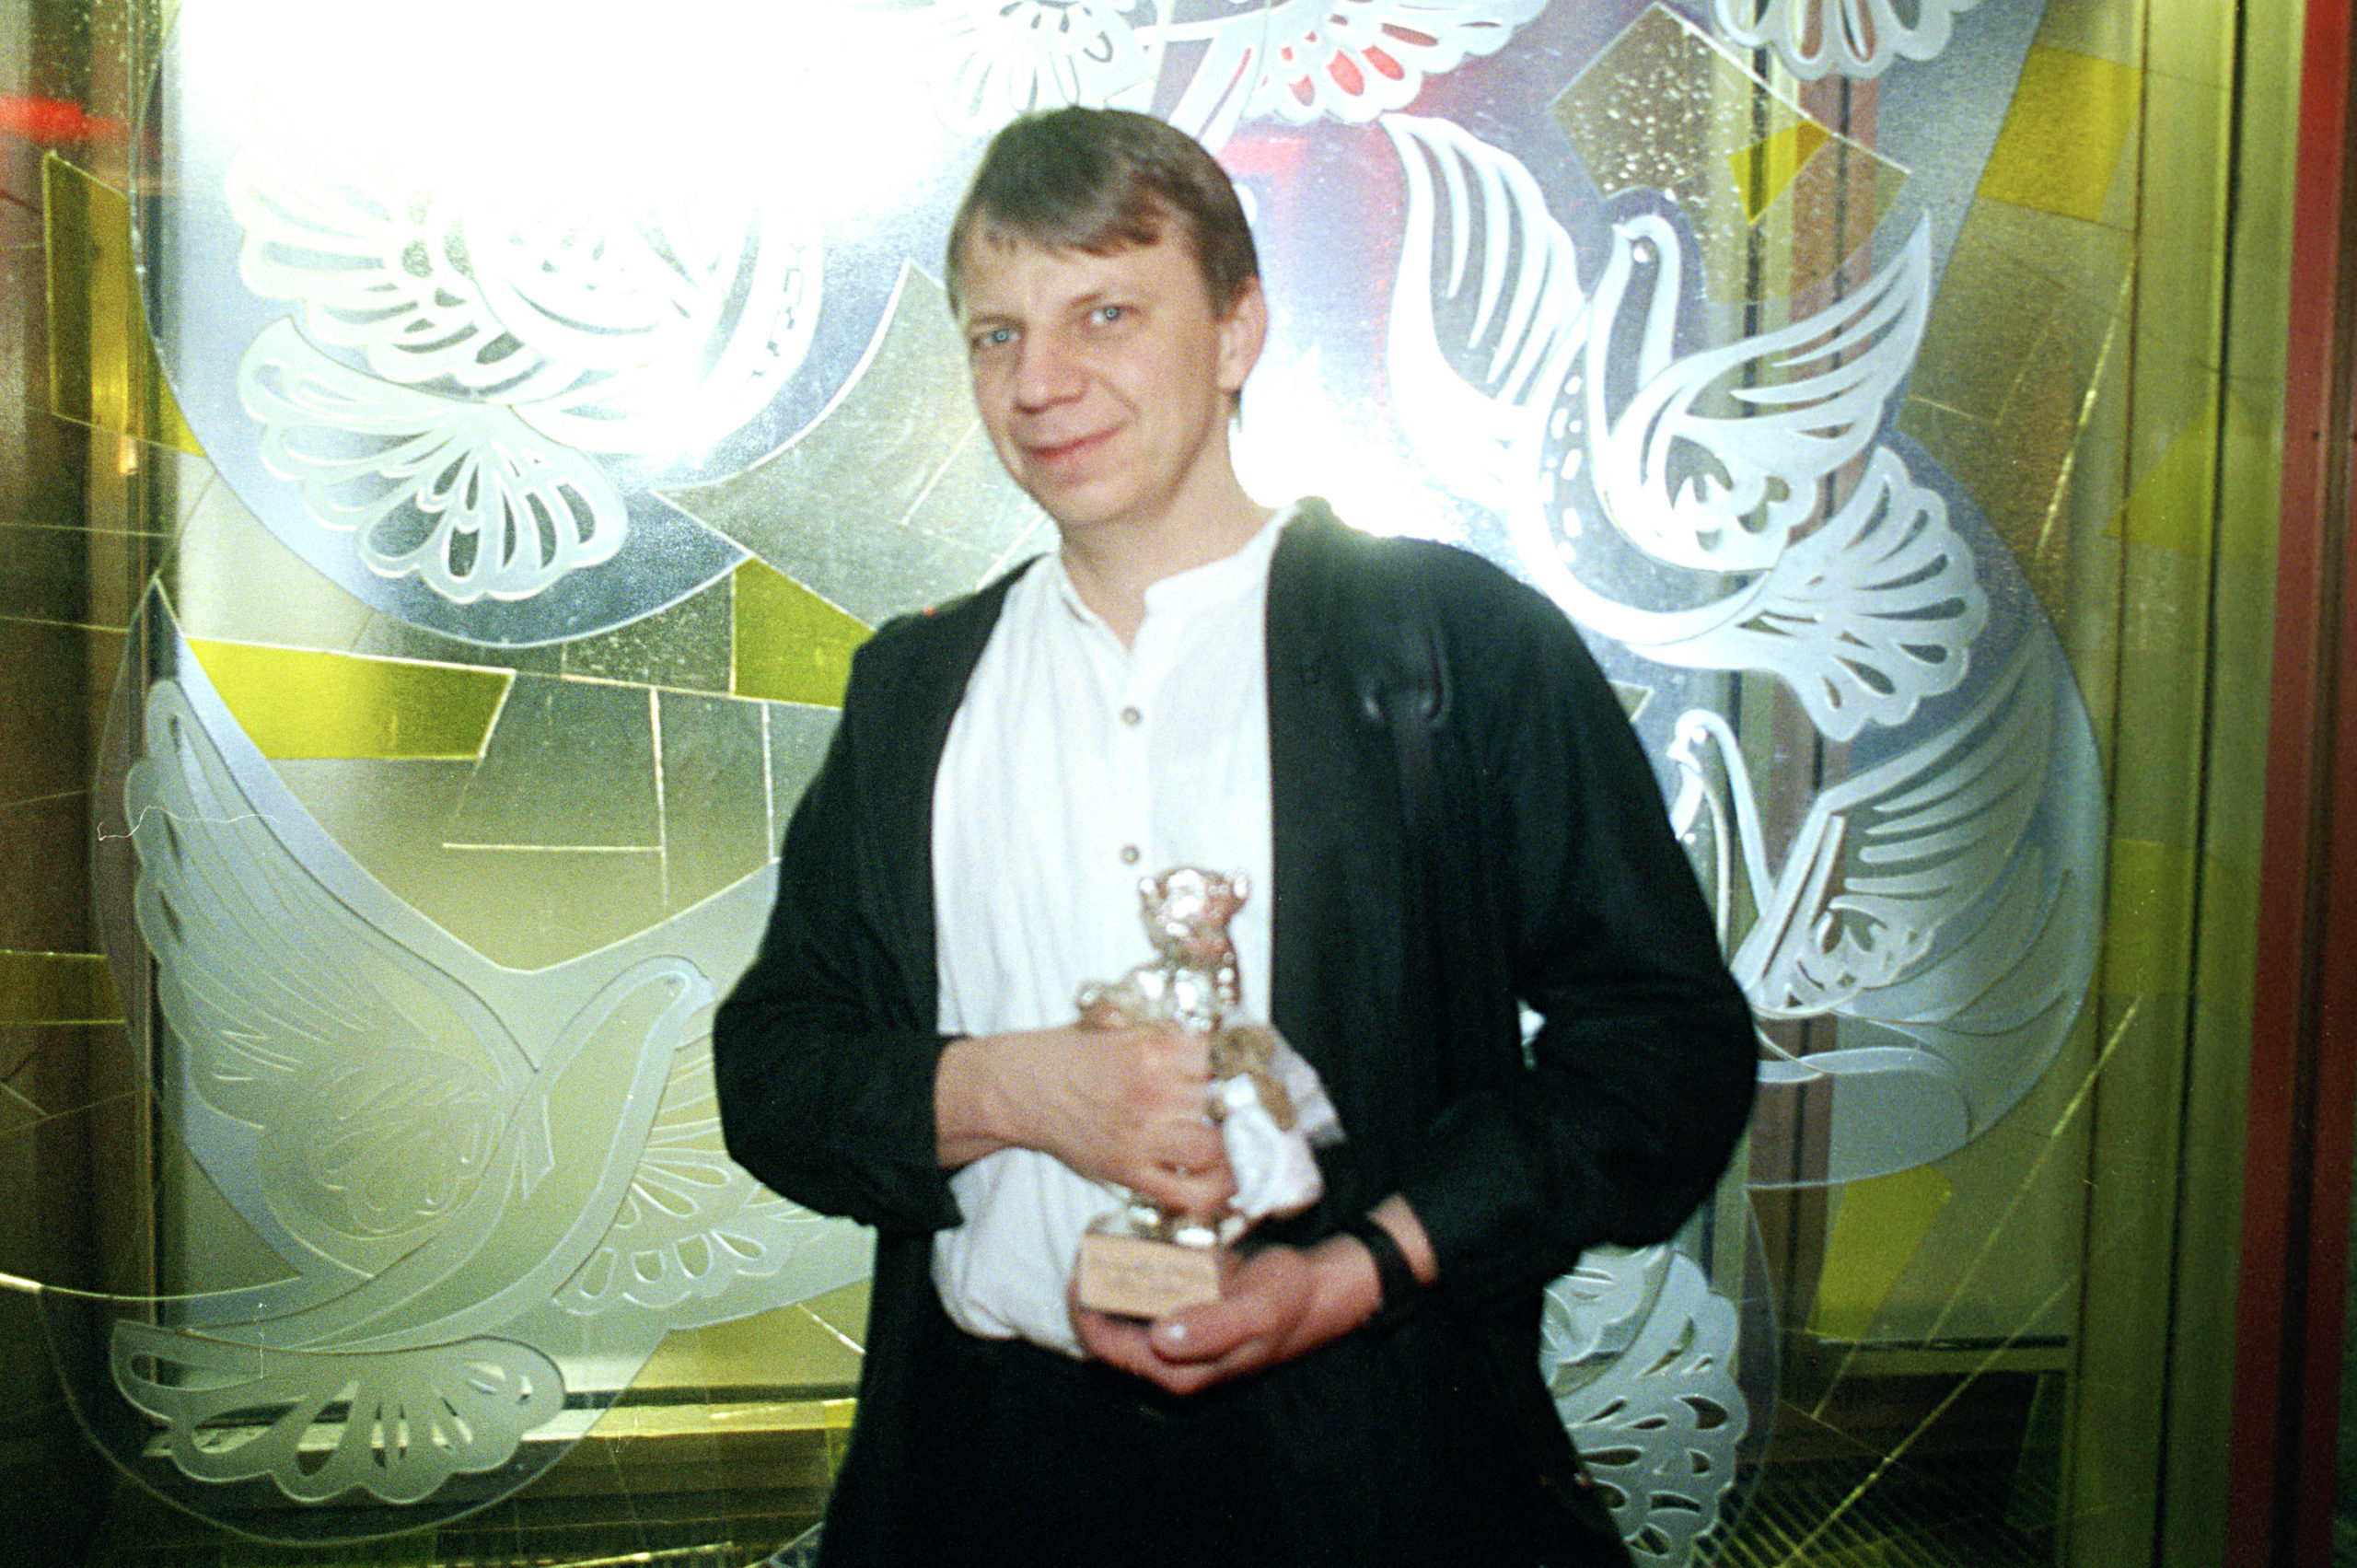 Andreas Dresen mit dem Silbernen Bären bei der Abschlussparty der Berlinale 2002. Foto: Imago/F. Kern/Future Image